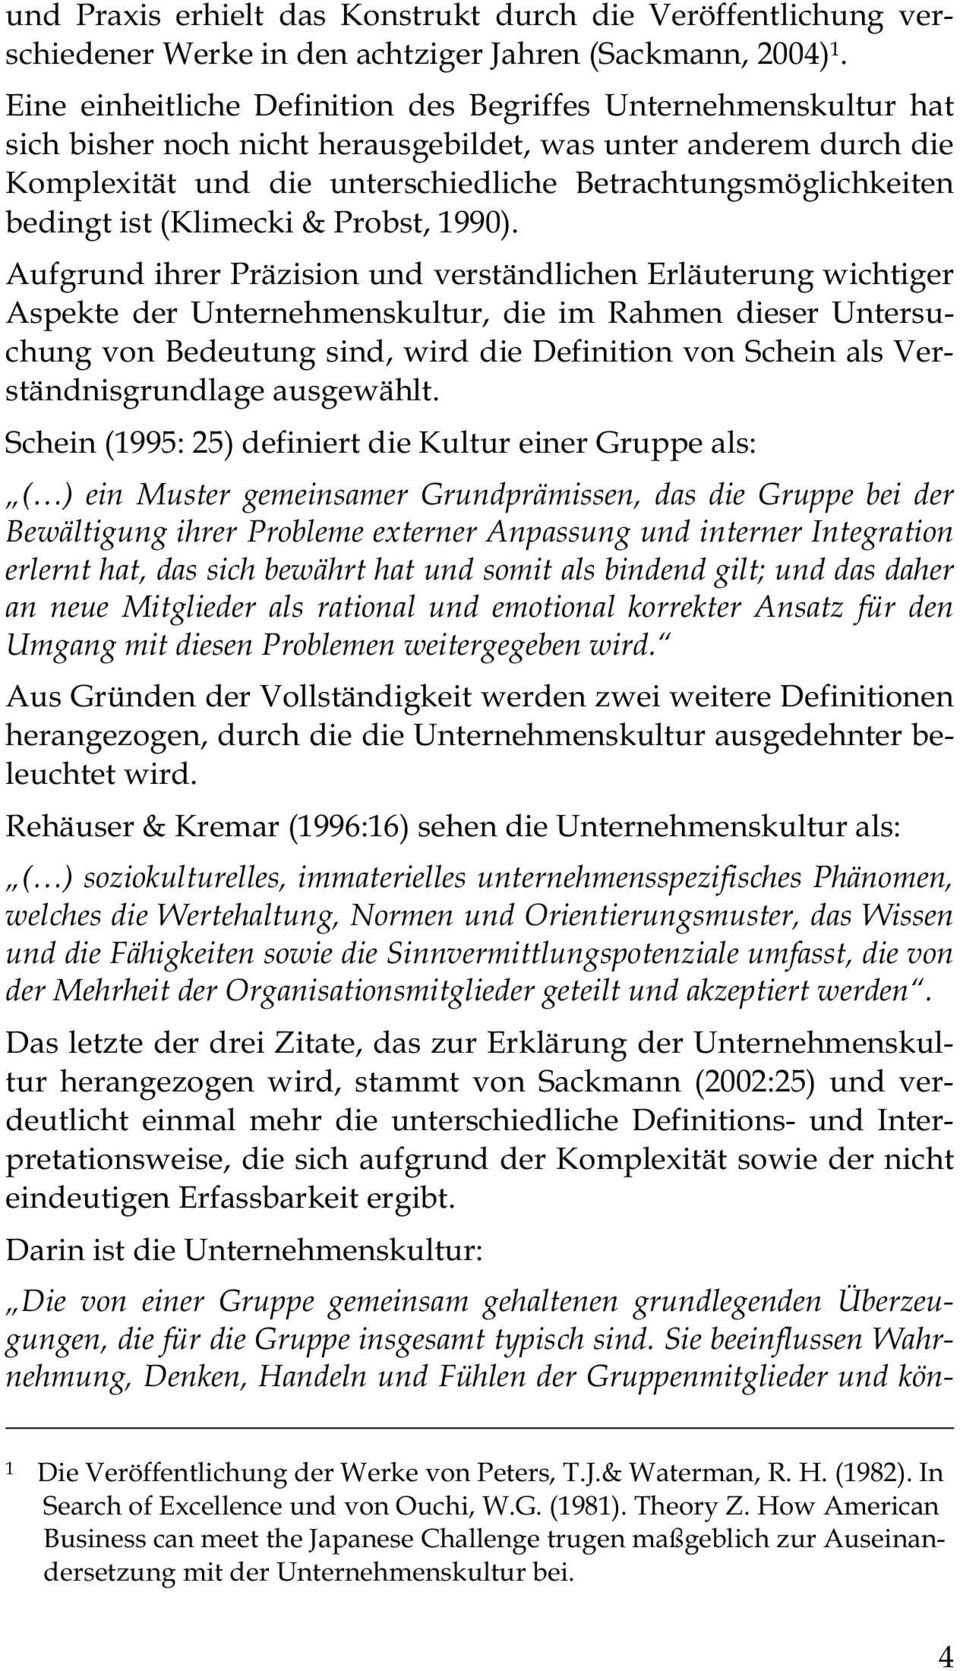 bedingt ist (Klimecki & Probst, 1990).